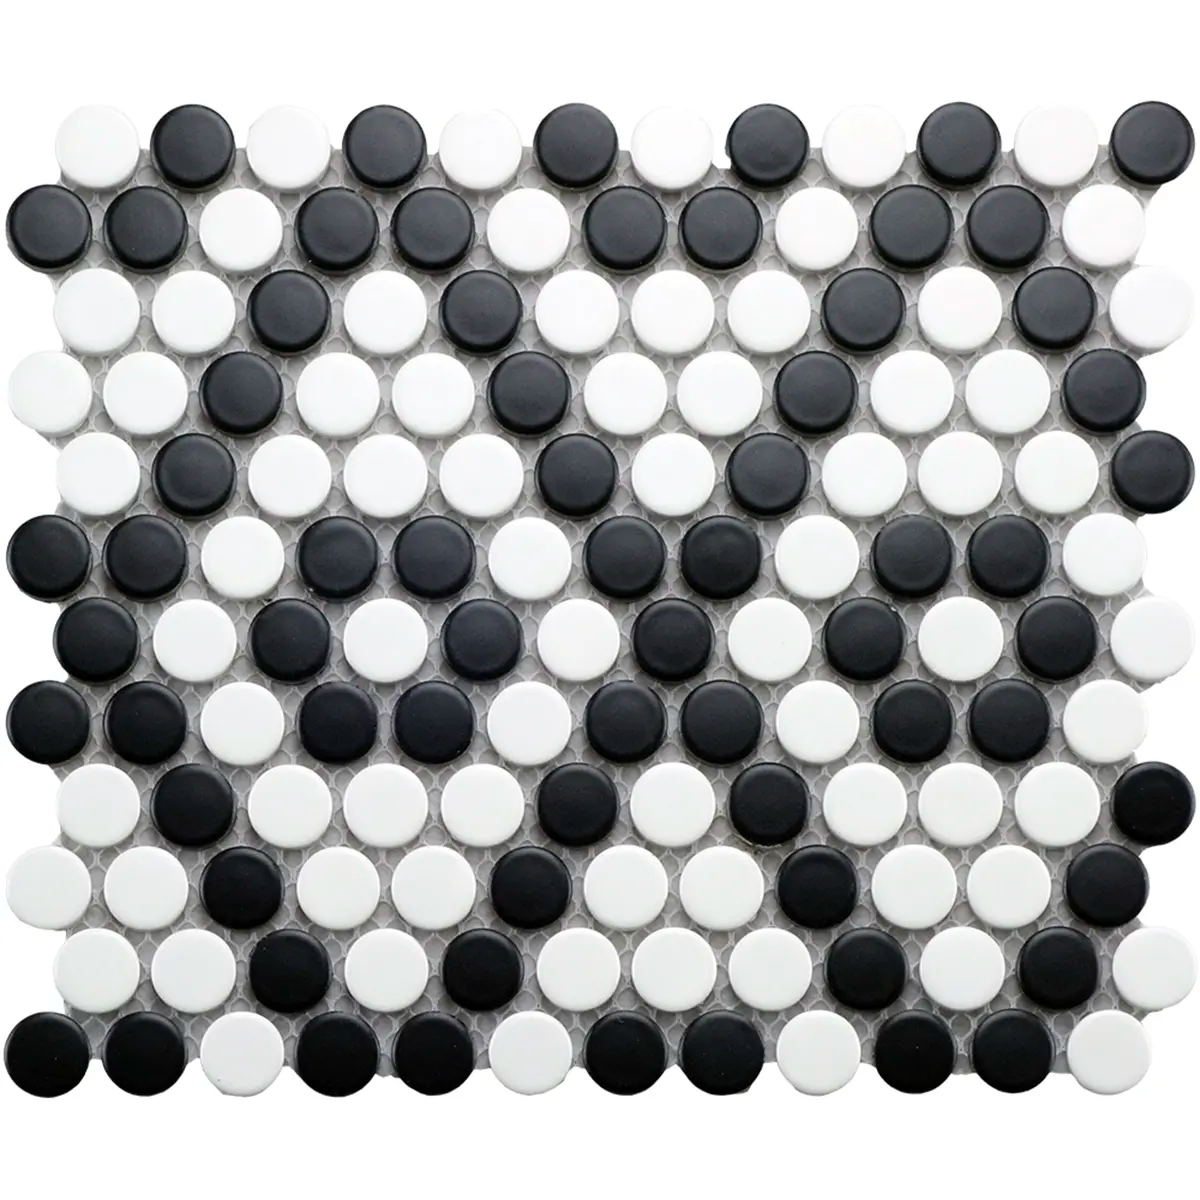 CC Mosaics 9”x10” Penny Round Matte Porcelain Mosaic Tile Black White